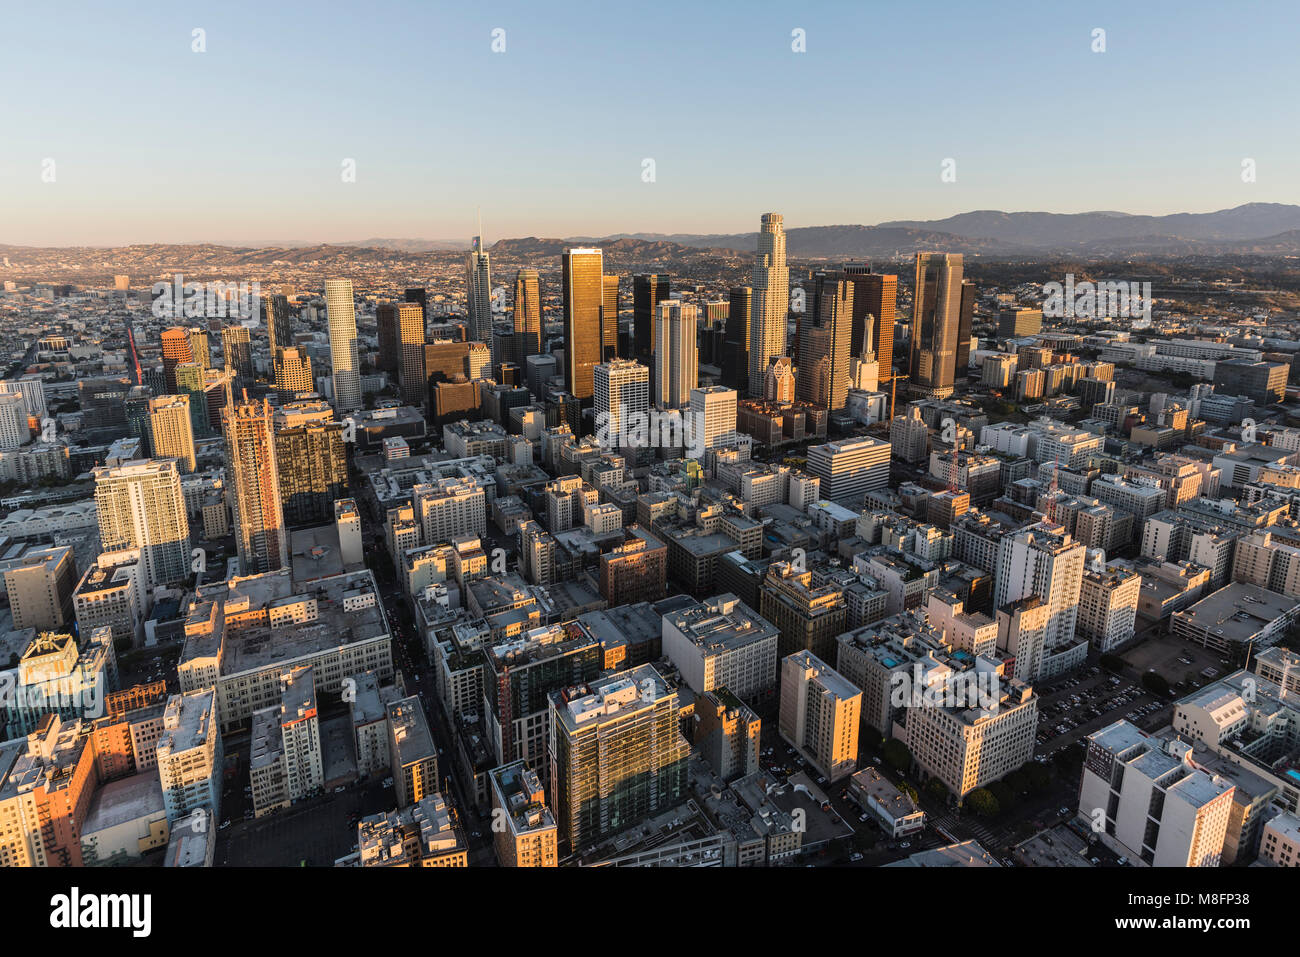 Los Angeles, California, Stati Uniti d'America - 20 Febbraio 2018: la mattina presto vista aerea delle torri, le strade e gli edifici nel centro di Los Angeles. Foto Stock